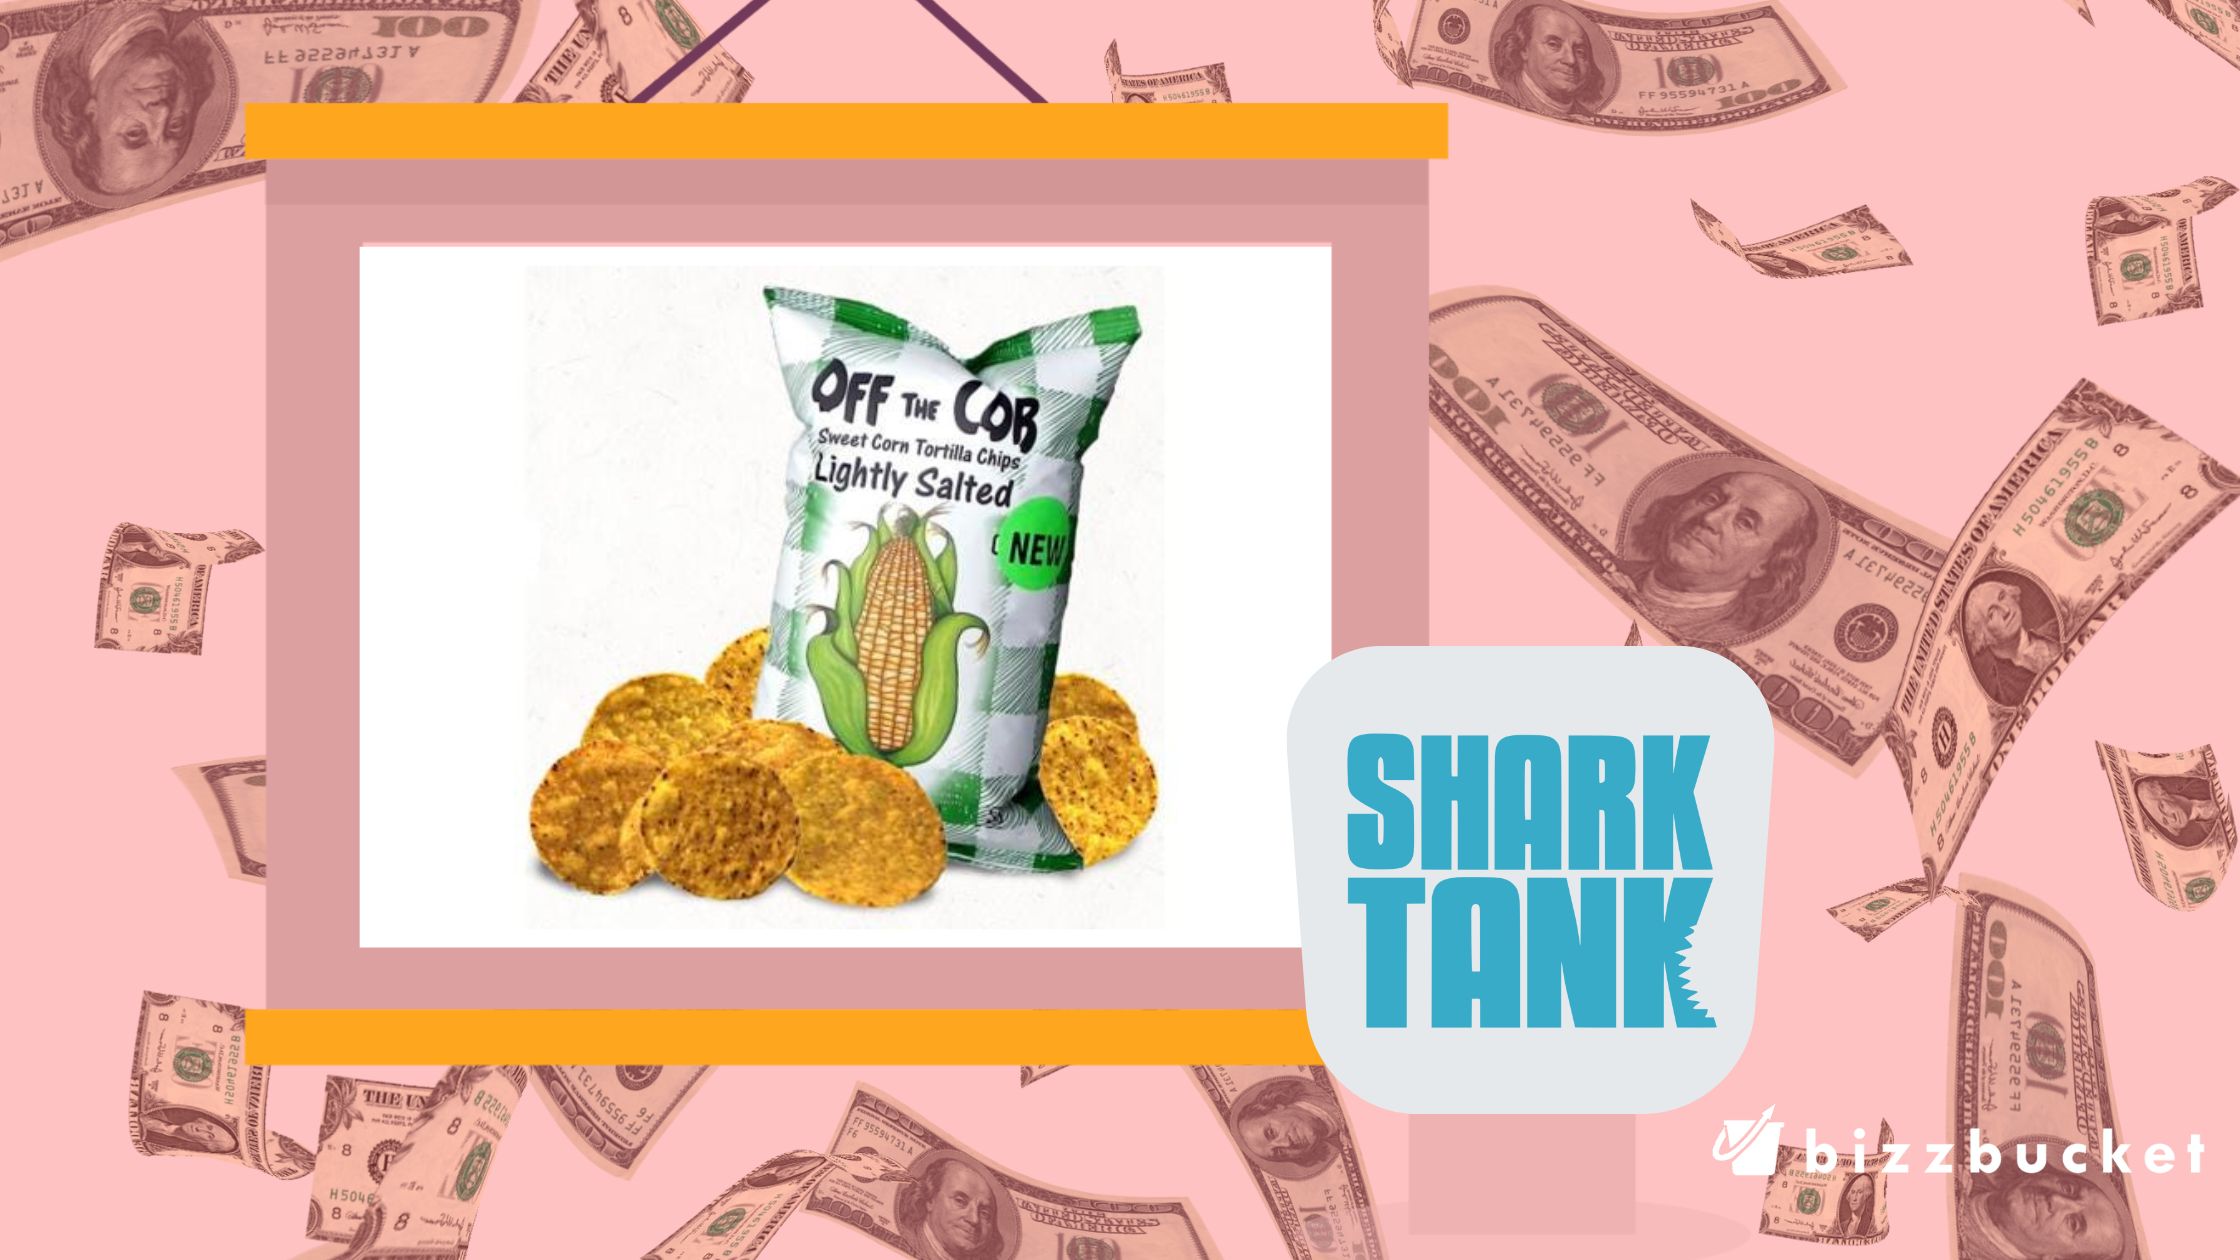 Off the Cob Tortilla Chips shark tank update